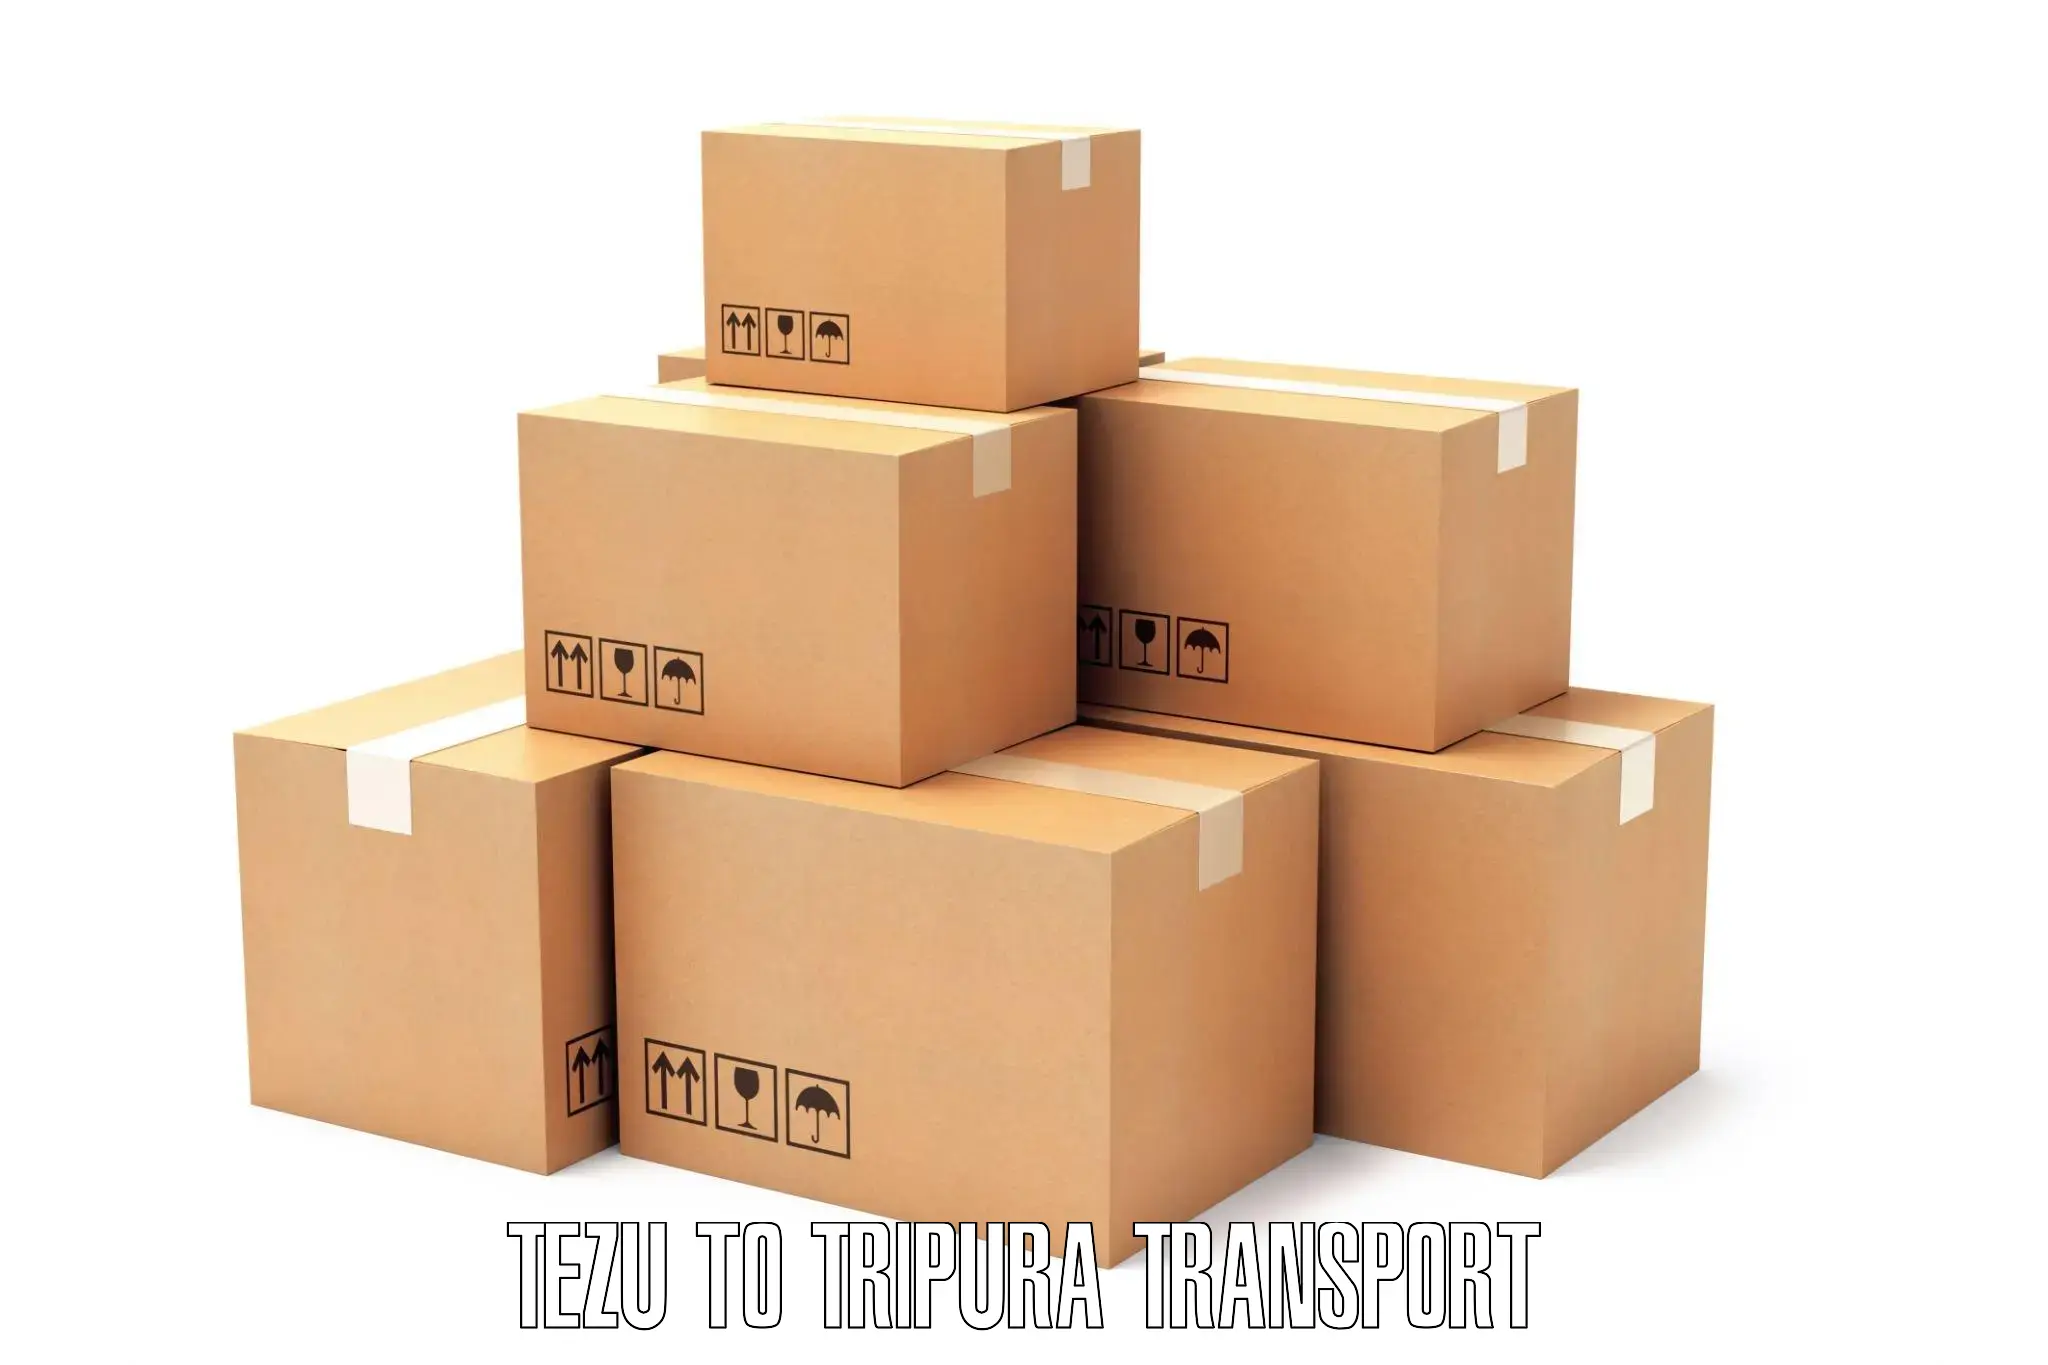 Furniture transport service Tezu to Dhalai